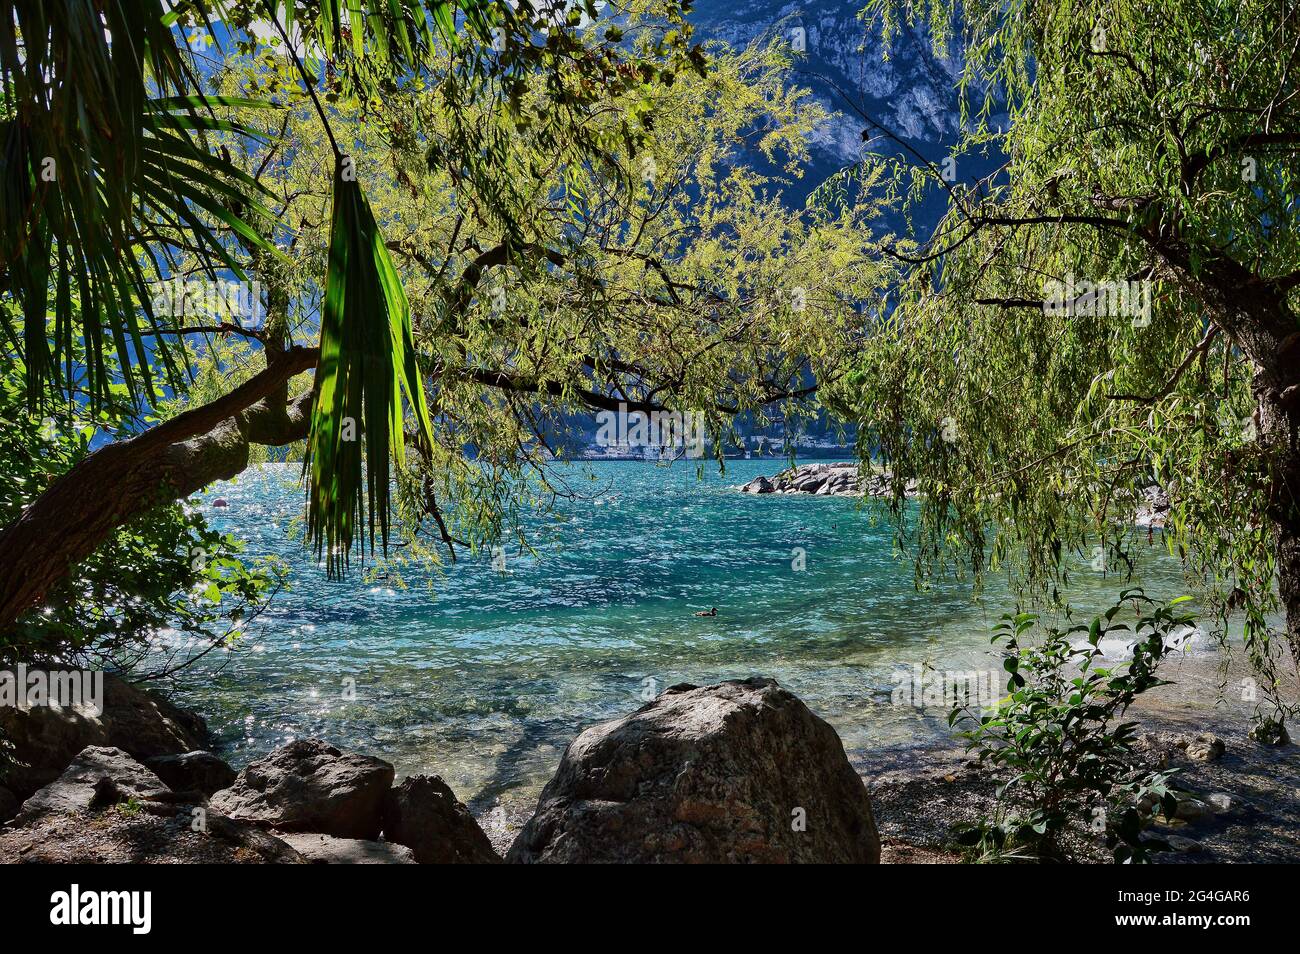 Tropisches, karibisches Flair am strand des gardasees mit Palmen, Bäumen, Steinen, türkisblauem Wasser Stockfoto